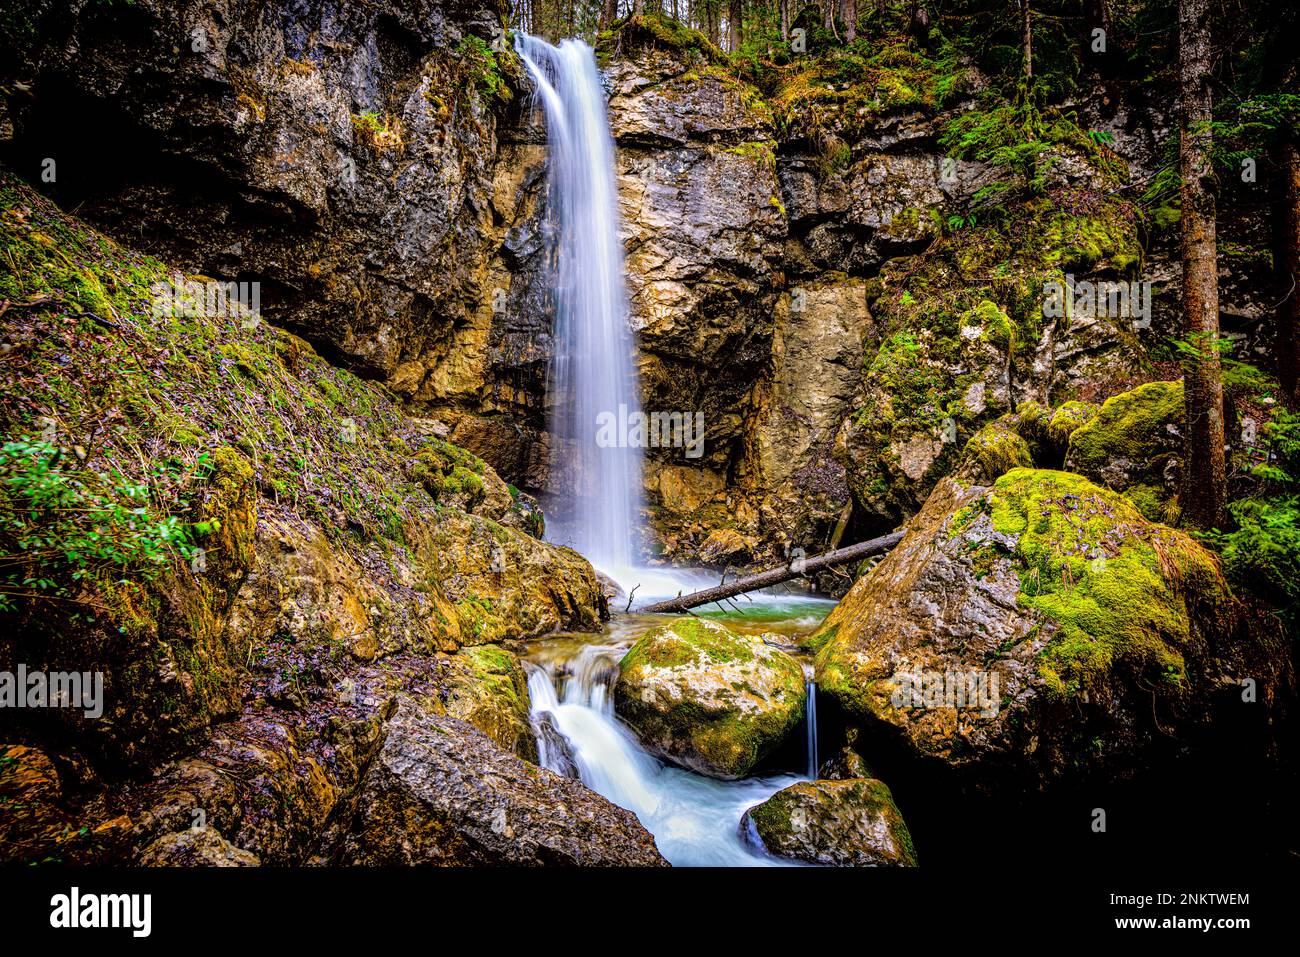 Sibli Wasserfall, Tegernsee, Rottach-Egern, Deutschland, Felsen, Moos, Steine, Bäume, Langzeitbelichtung, unglaublich Stockfoto